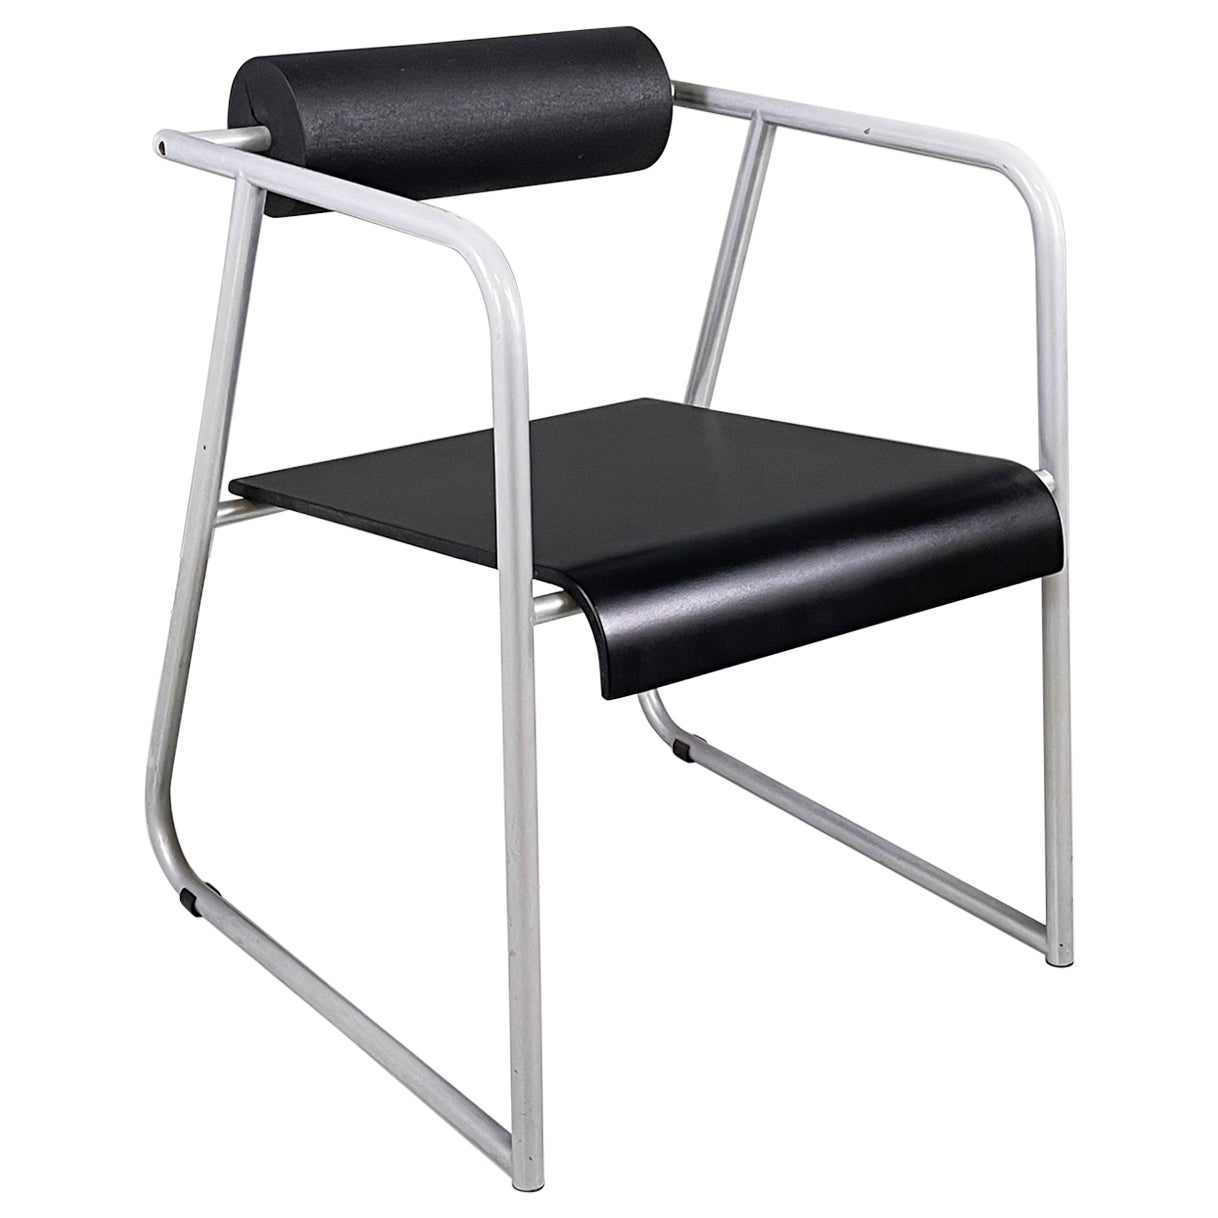 Moderner italienischer Stuhl aus grauem Metall, schwarzem Gummi und Holz, 1980er Jahre